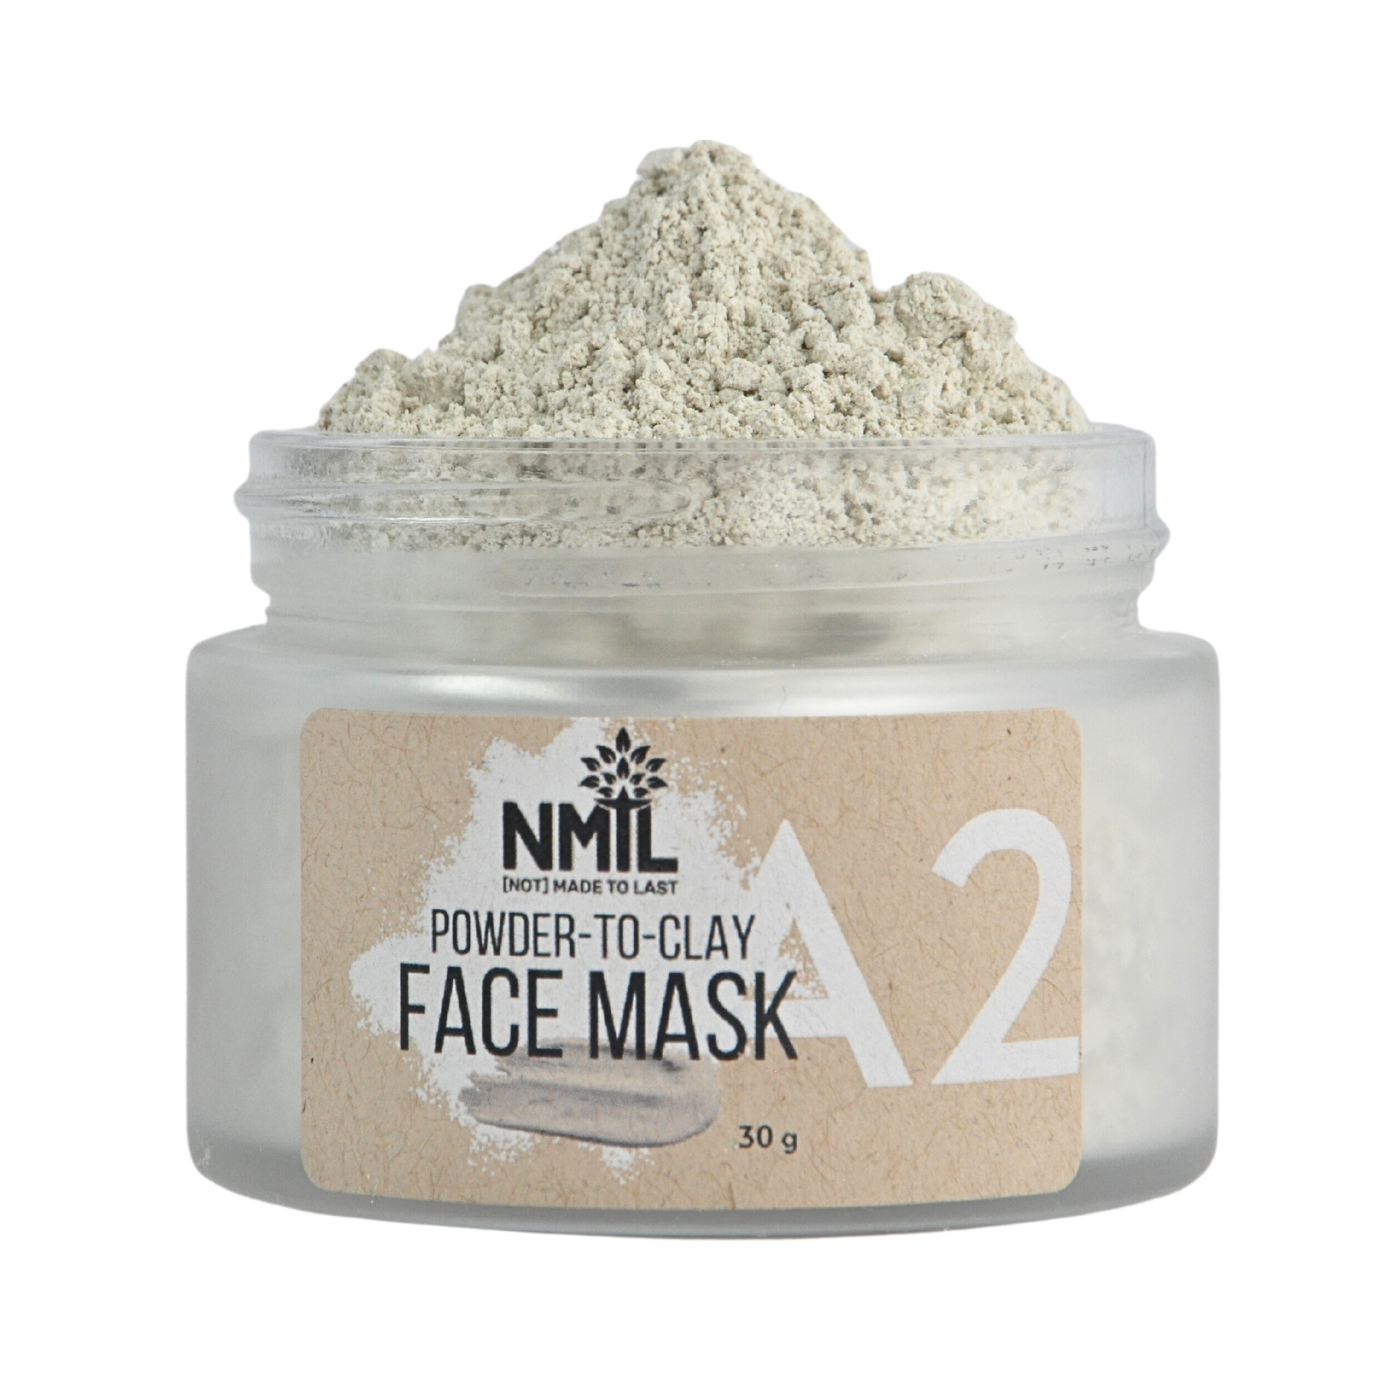 Mineral Face Masks